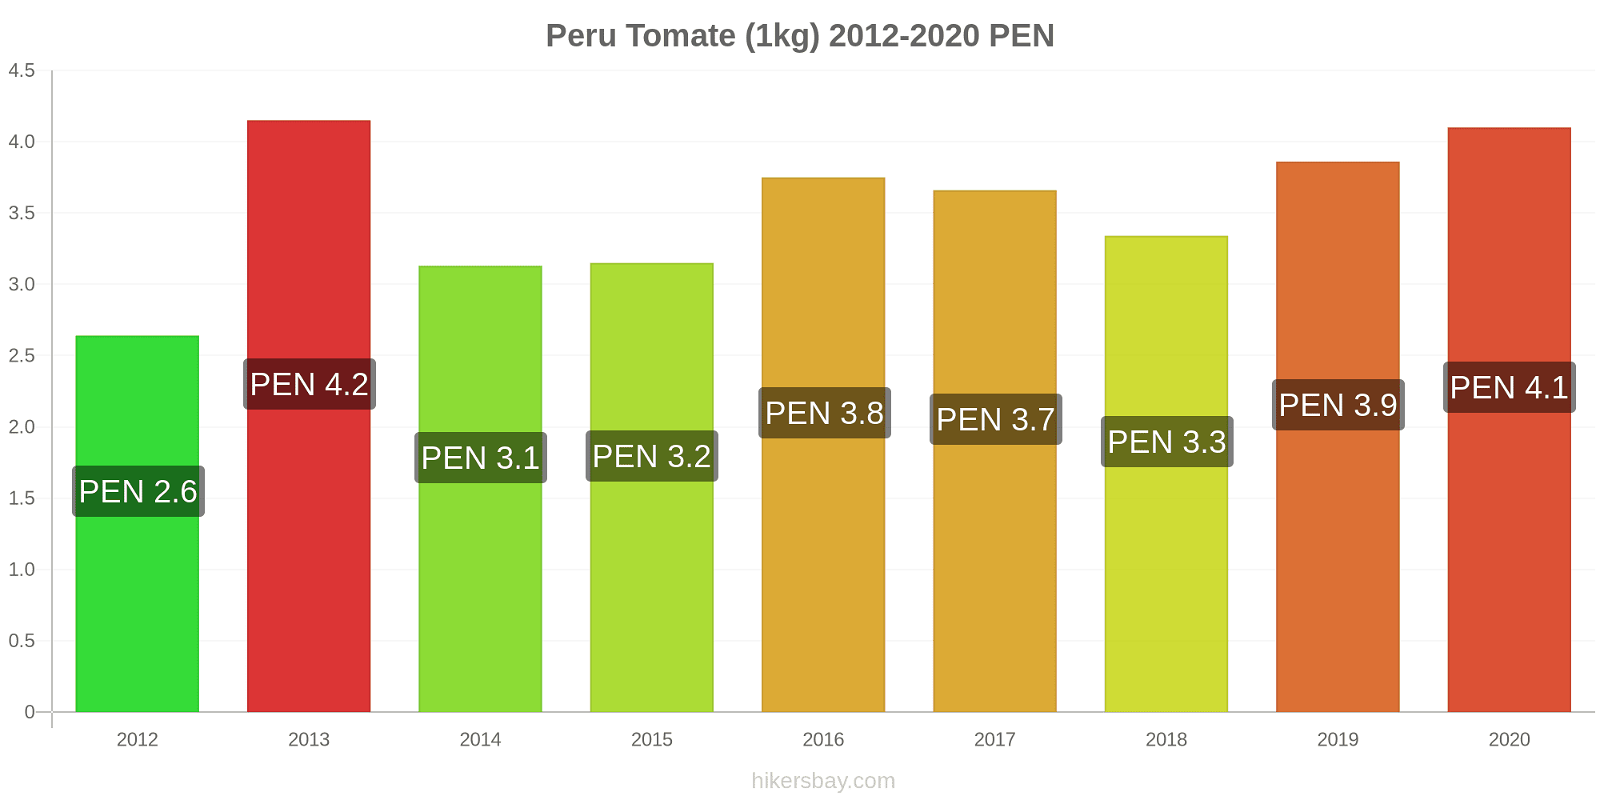 Peru Preisänderungen Tomaten (1kg) hikersbay.com